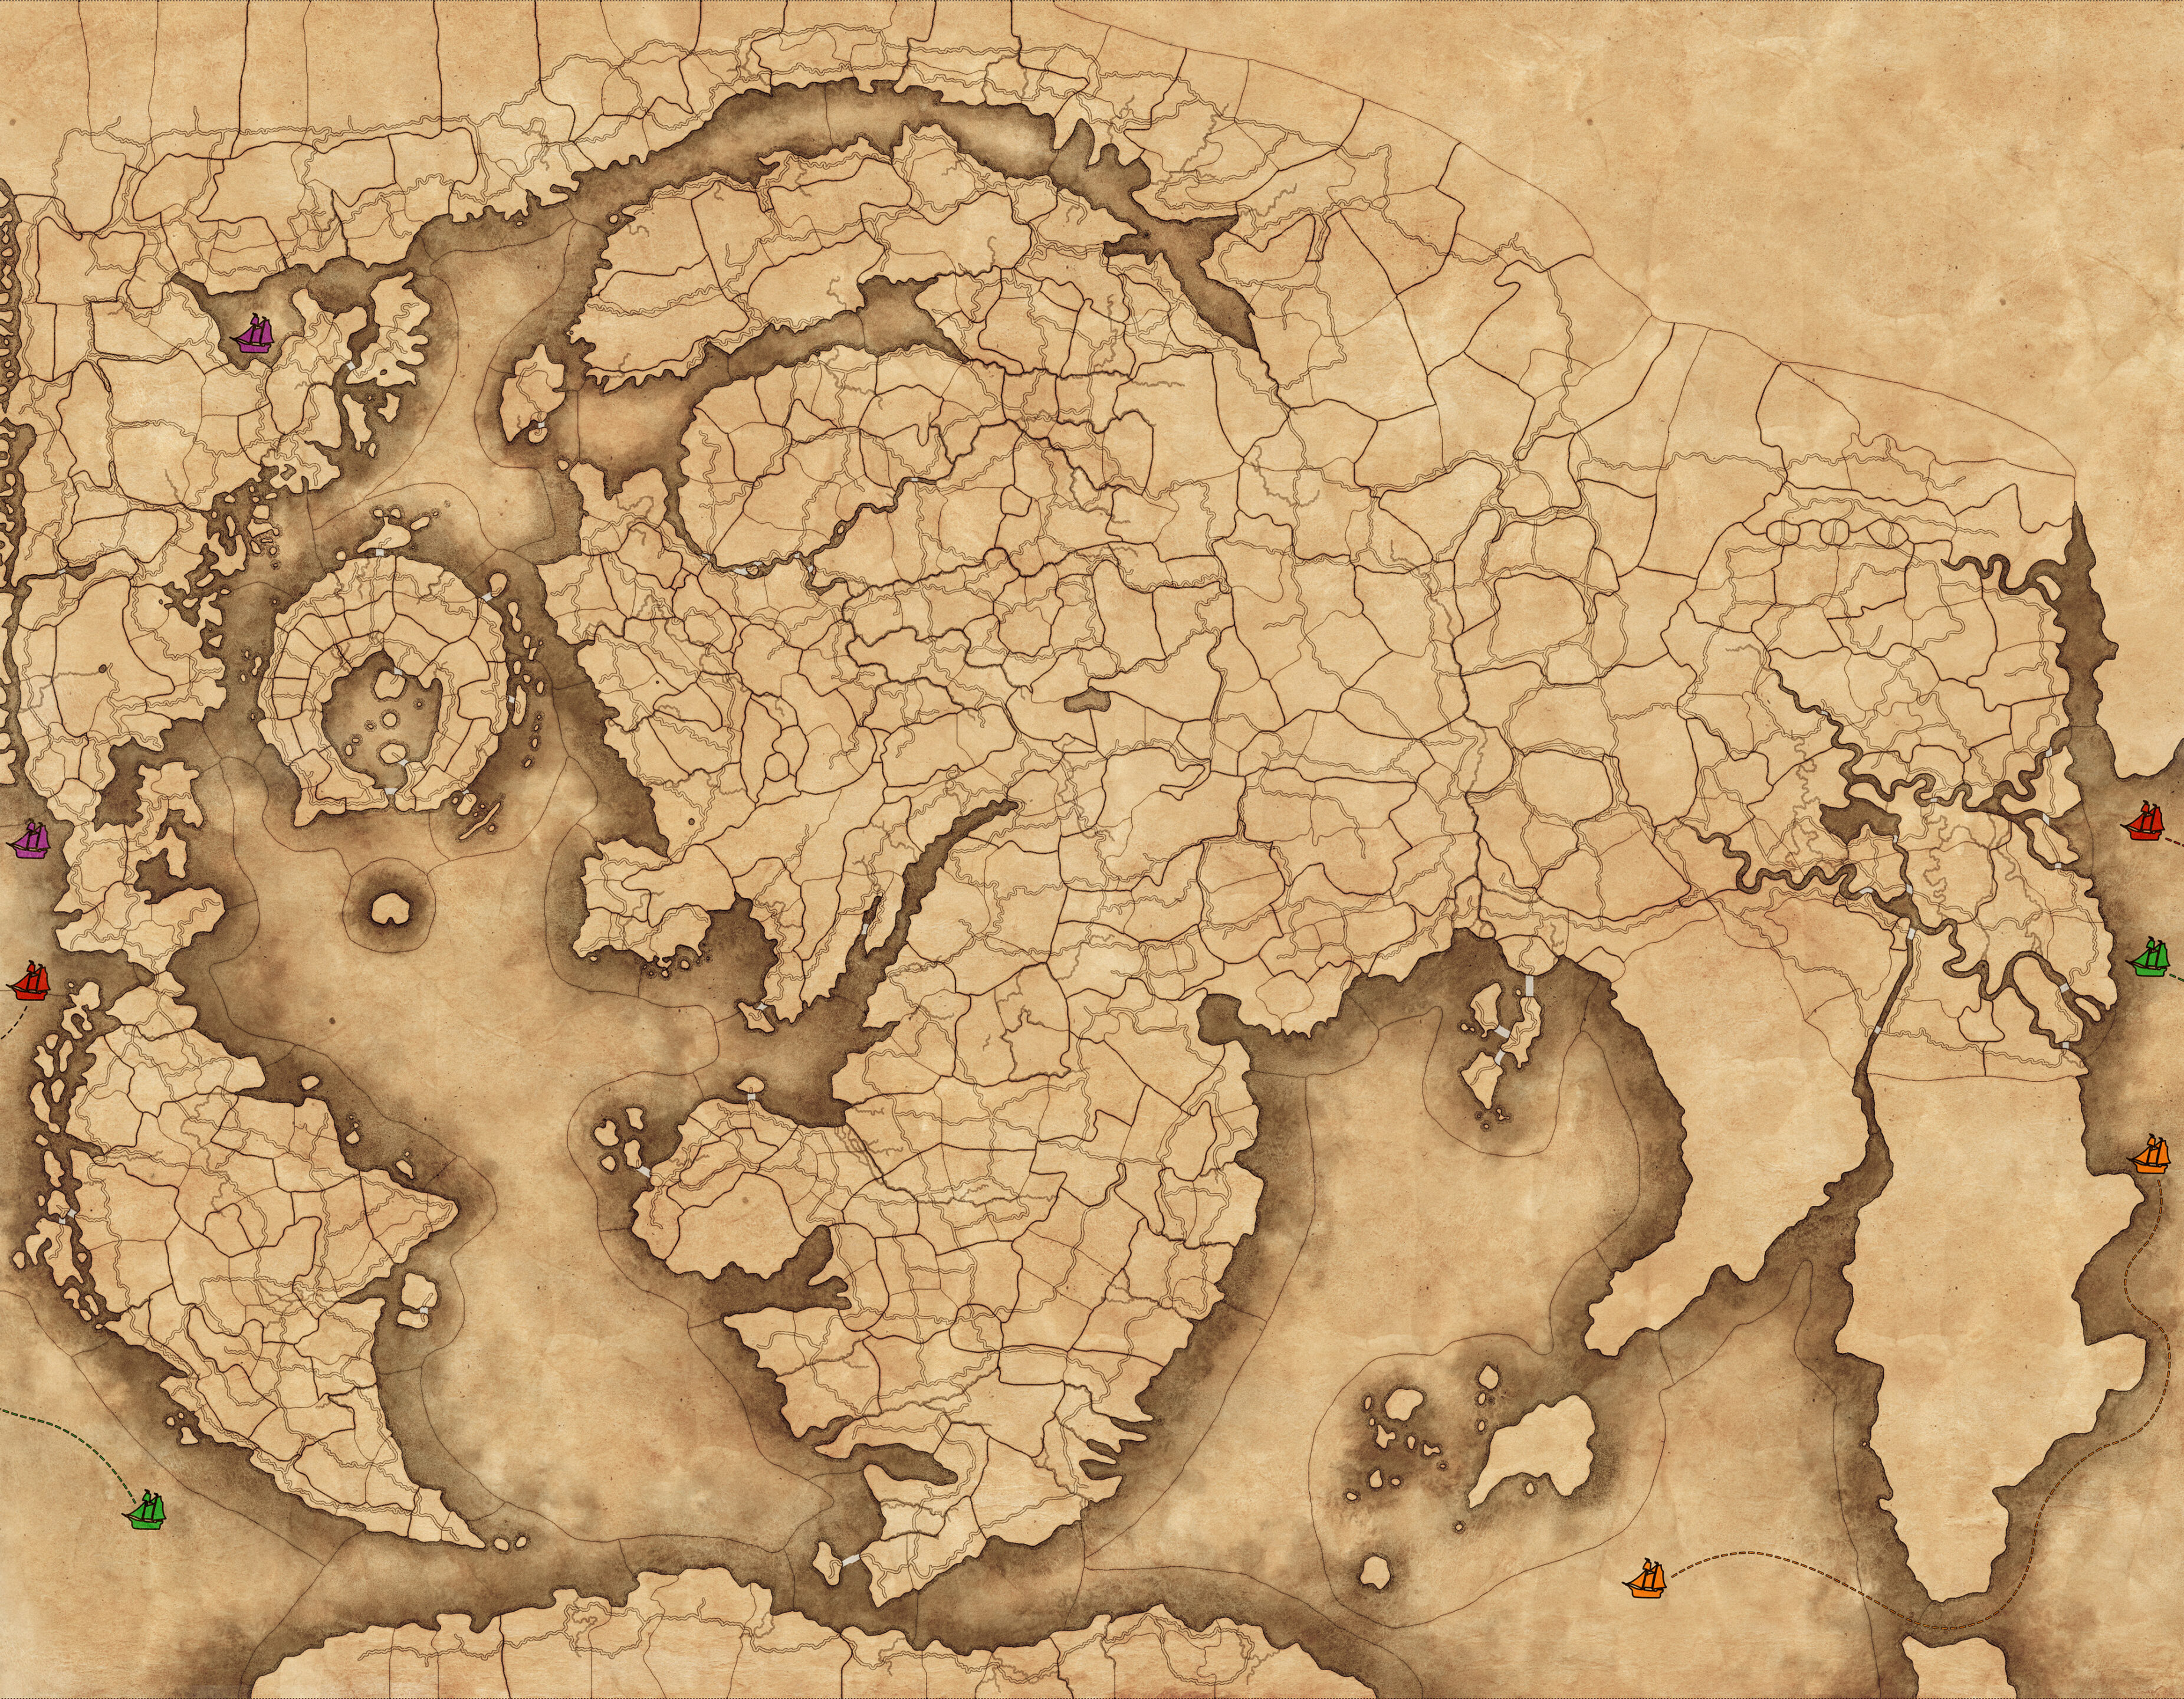 تصویری از نقشه حالت بازی inmortal empires ، از جمله نمادهای قایق رنگی که نمایانگر خطوط دریایی است که می تواند برای عبور از مسافت های بزرگ جهان استفاده شود